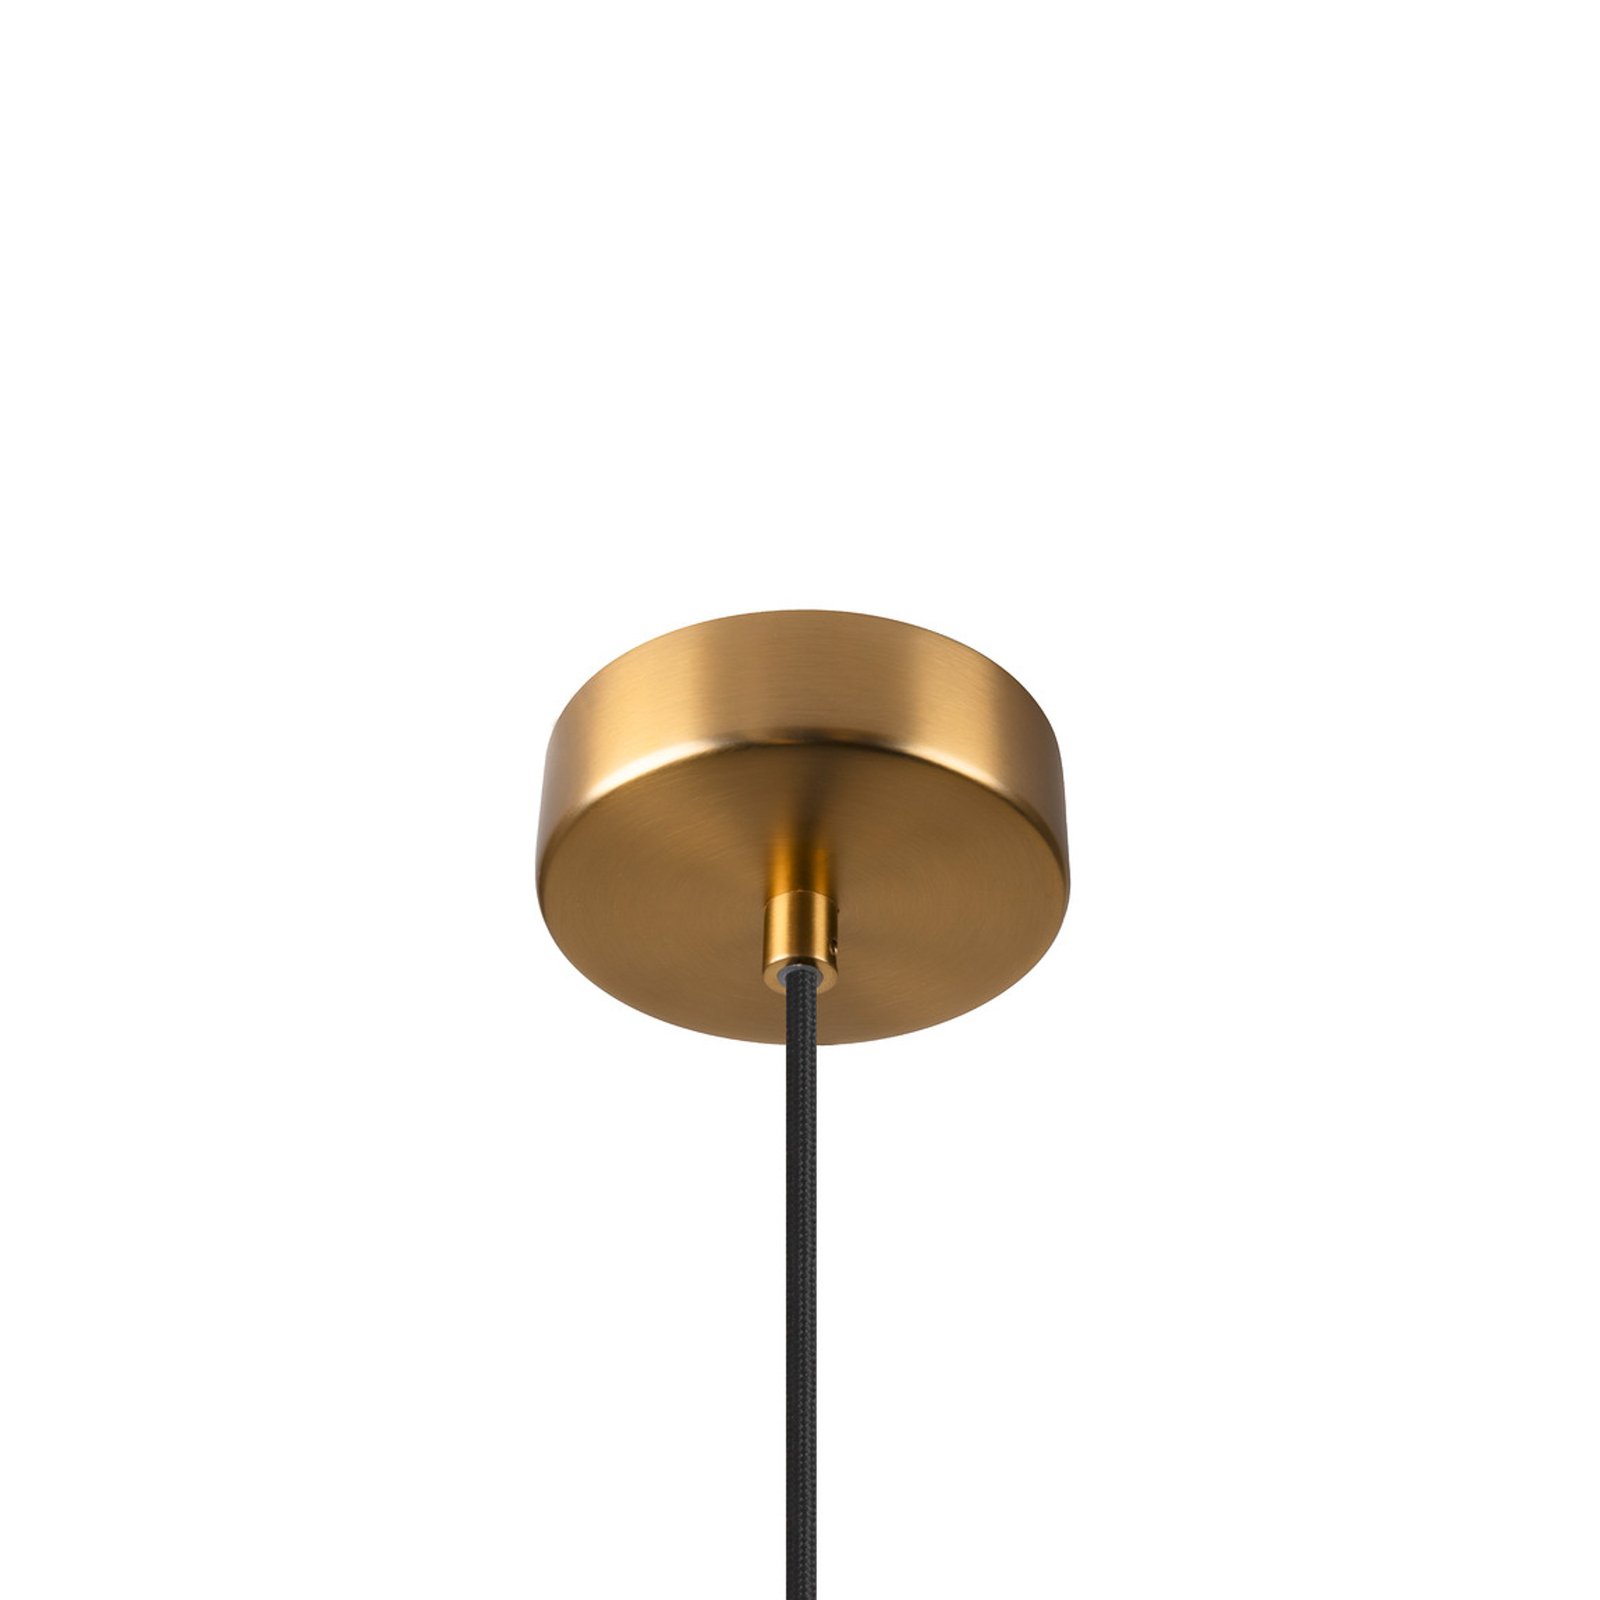 Pantilo Rope 27 hanglamp, goudkleurig, staal, Ø 27 cm